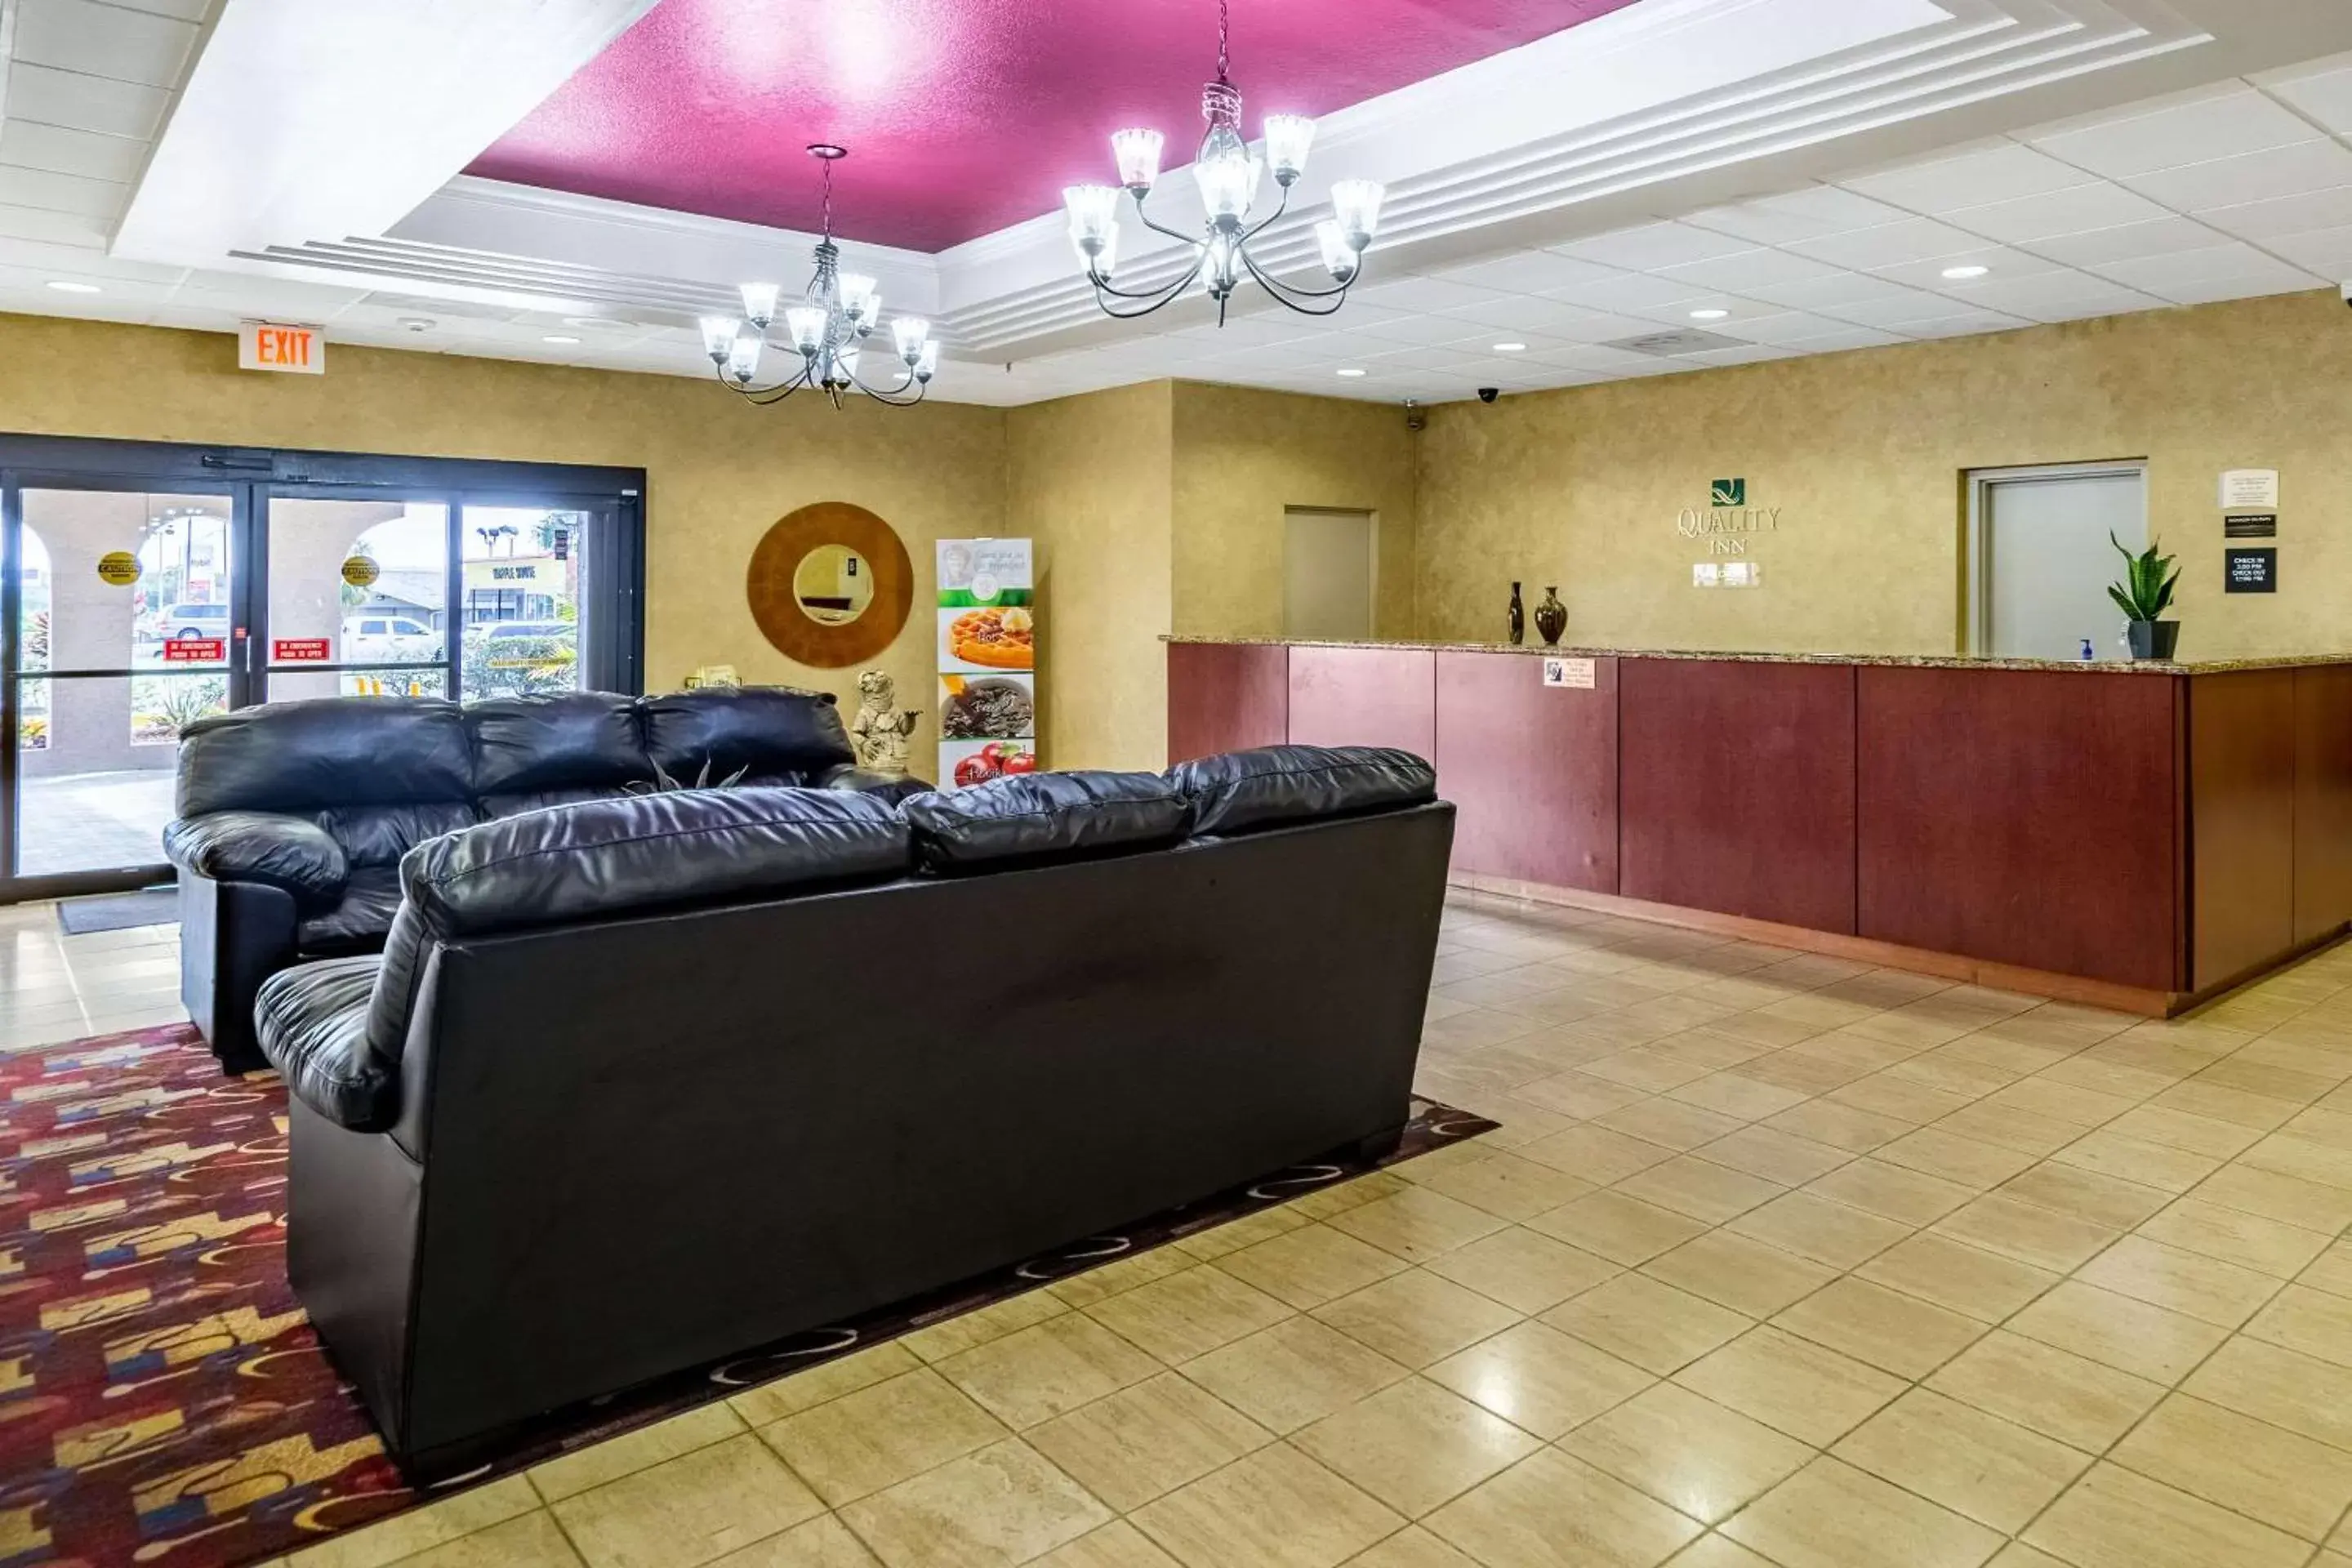 Lobby or reception, Lobby/Reception in Quality Inn Lakeland North